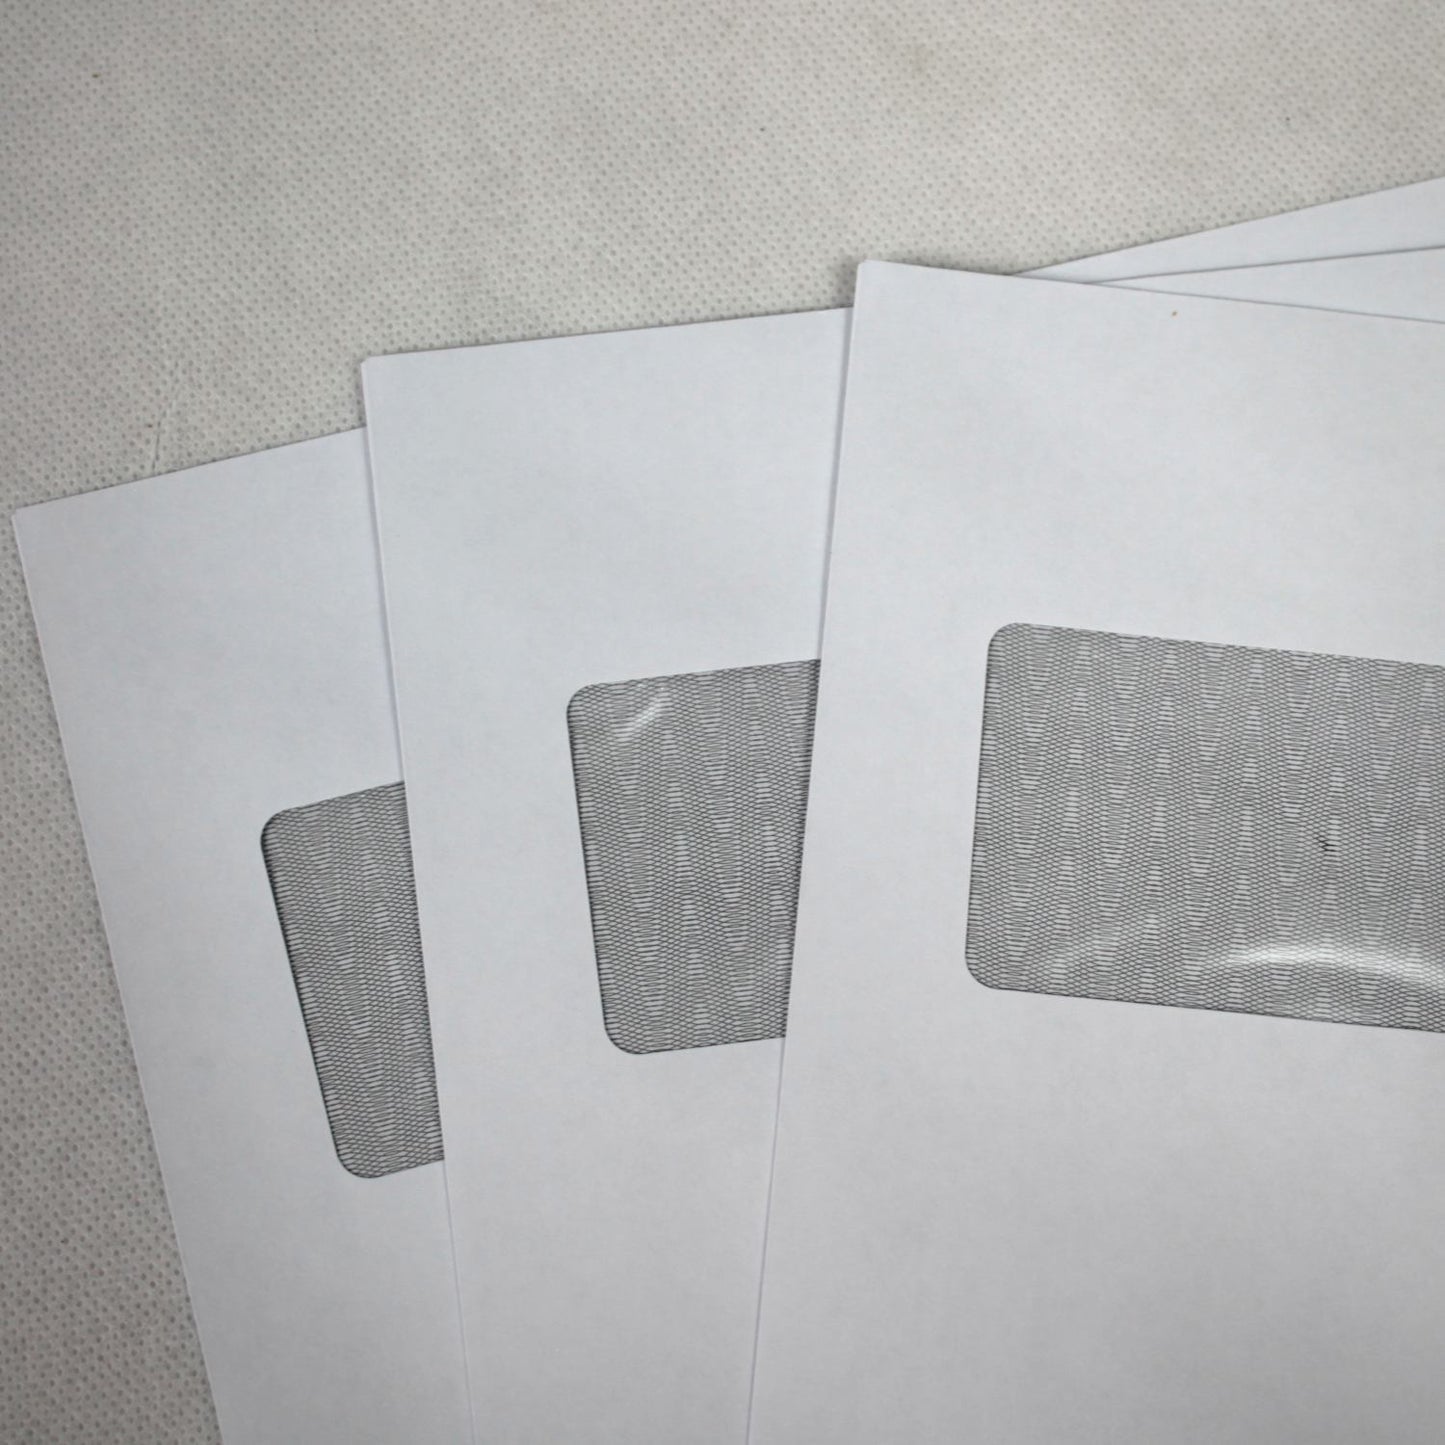 162x229mm C5 White Gummed Envelopes (Window 45x90mm / 20mm left, 72mm up)